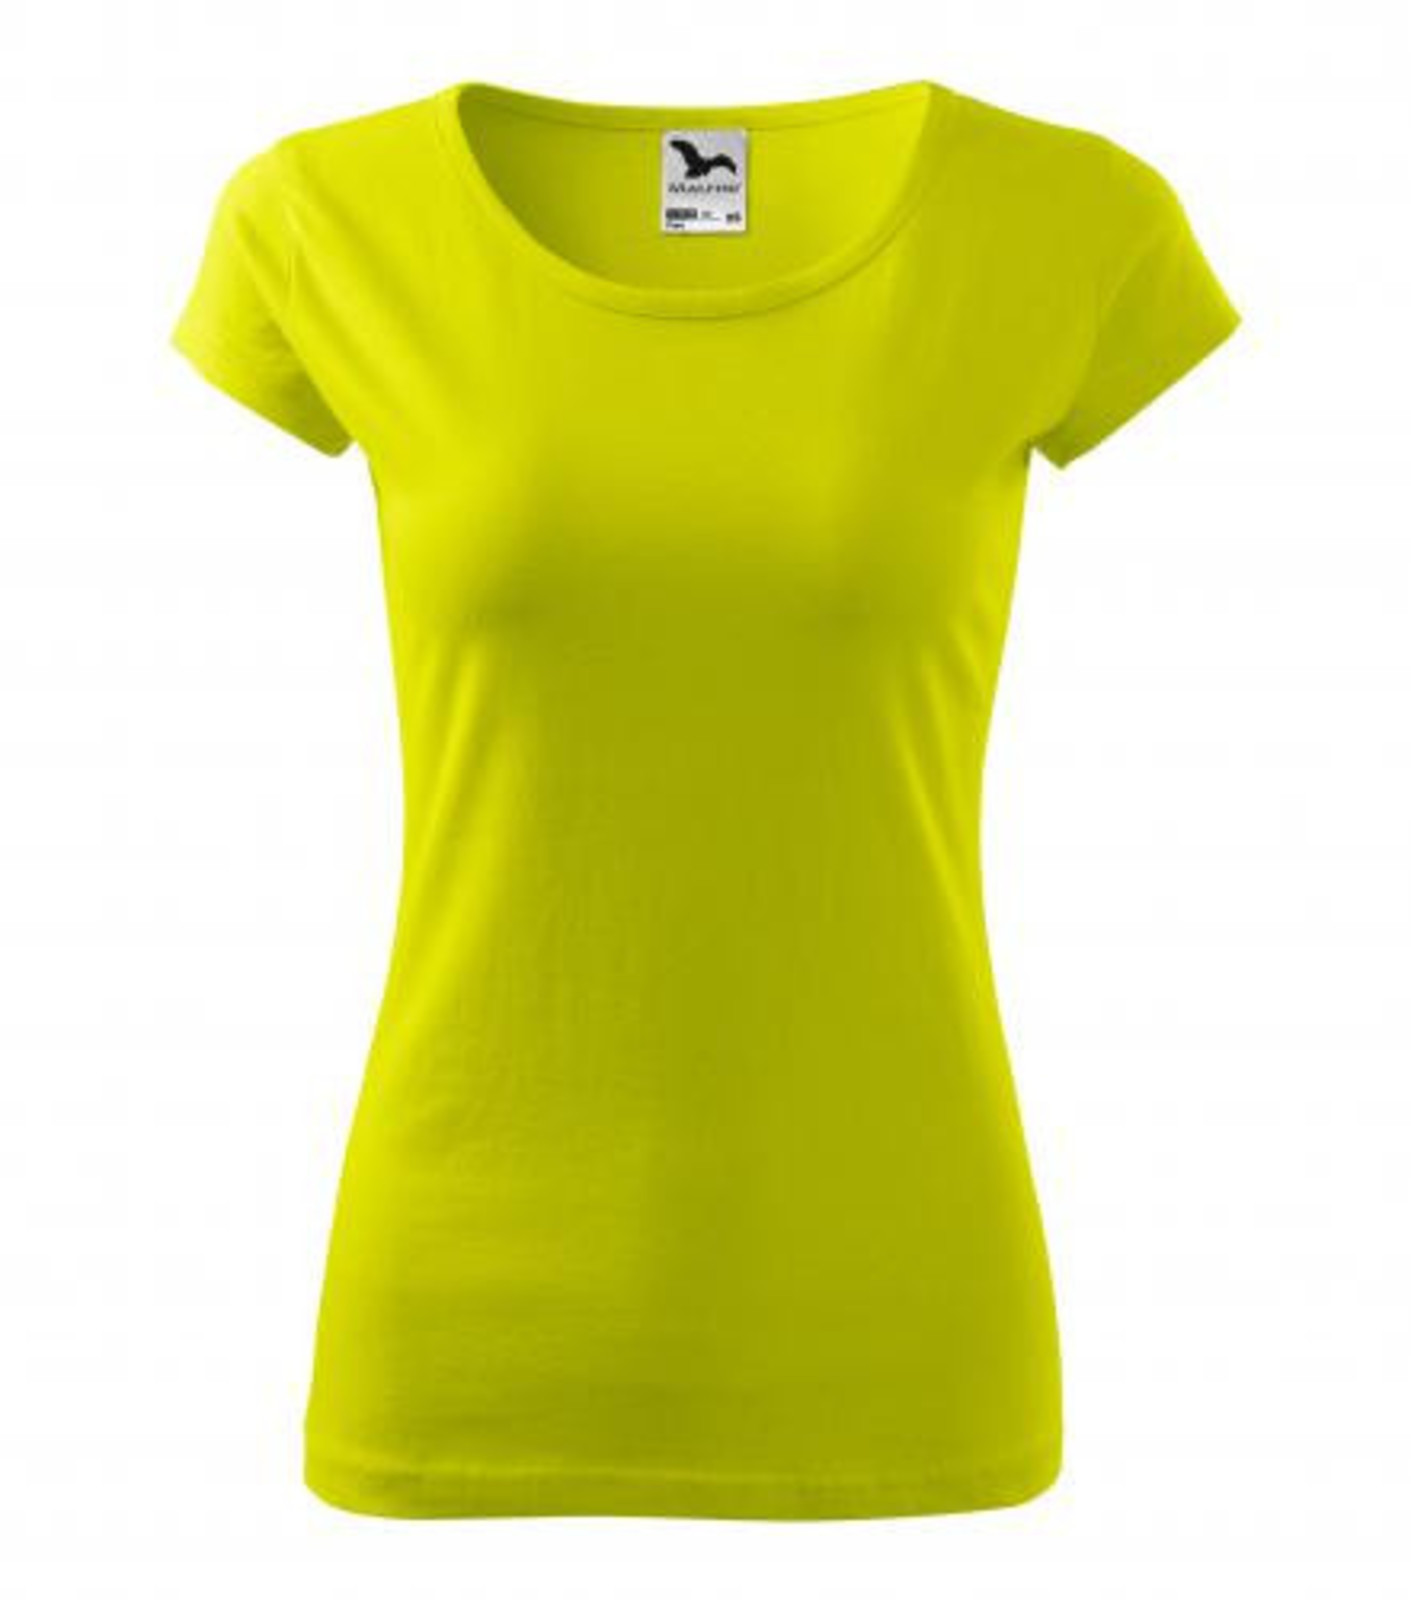 Dámske bavlnené tričko Malfini Pure 122 - veľkosť: XL, farba: limetková